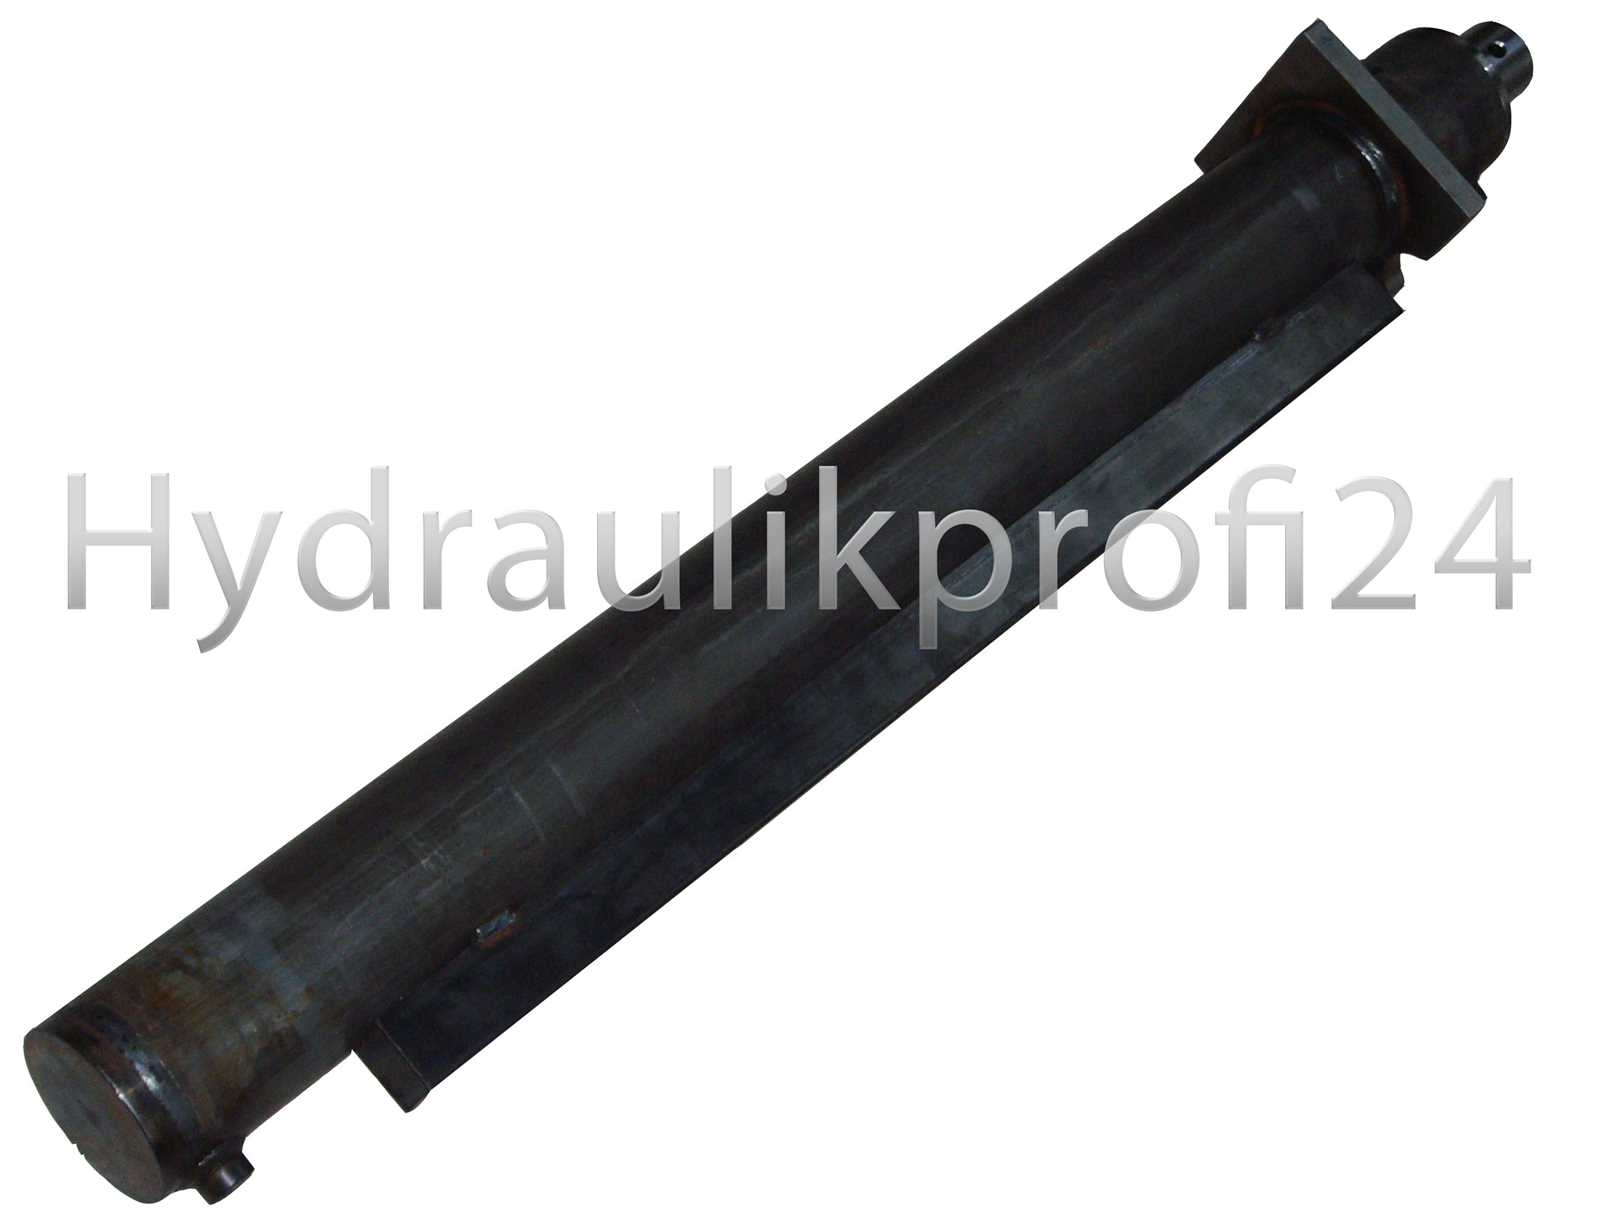 Hydraulikzylinder doppeltwirkend  60-100-1200 für Holzspalter mit Kopfflansch 170x170x20 mm